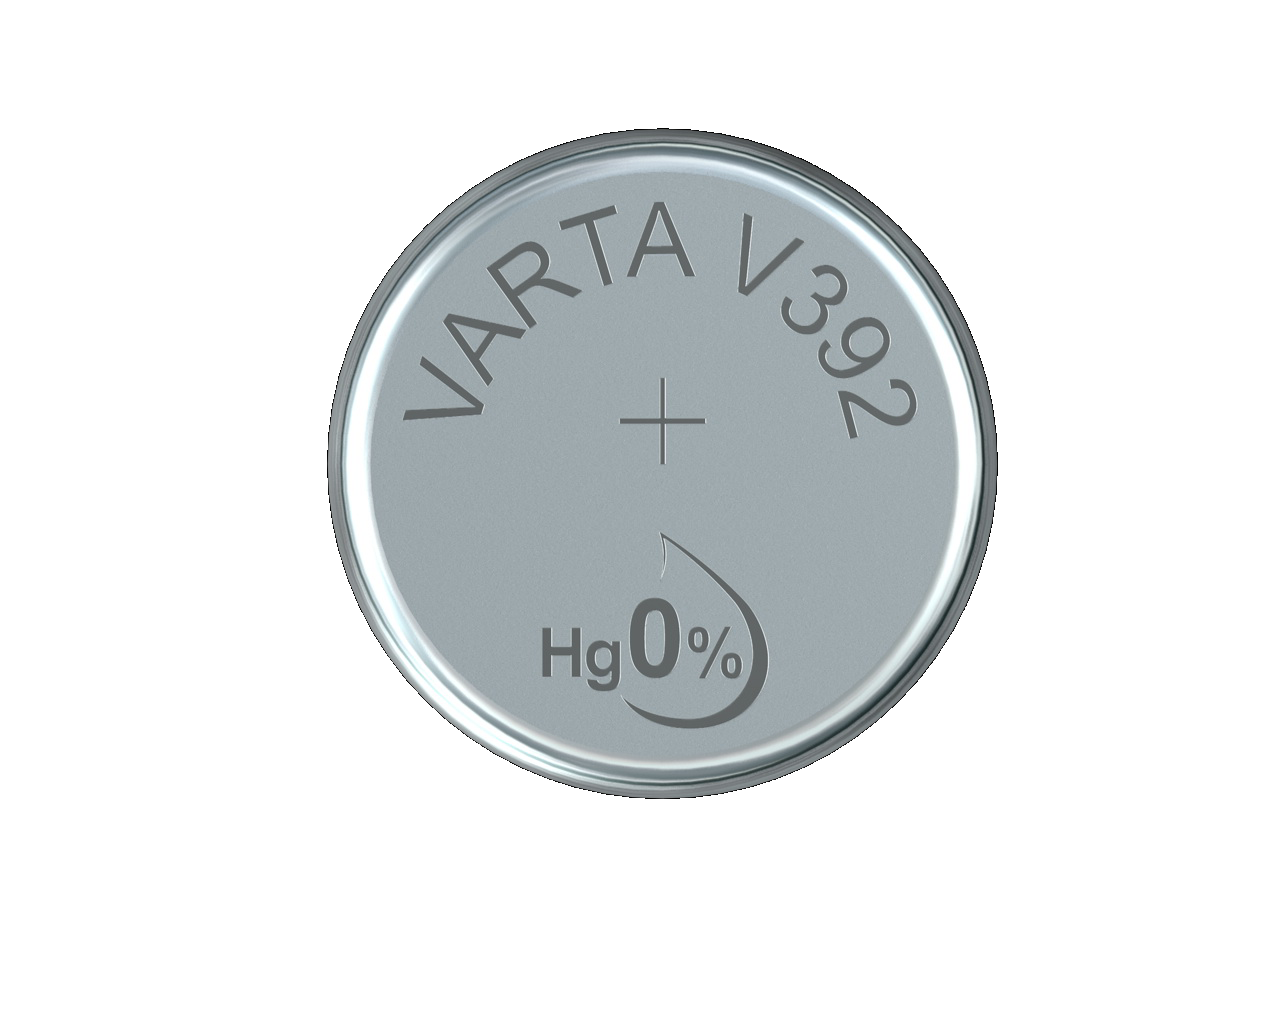 Varta Watch V392 SR41 1,55 V Uhrenbatterie High Drain 40mAh (1er Blister)